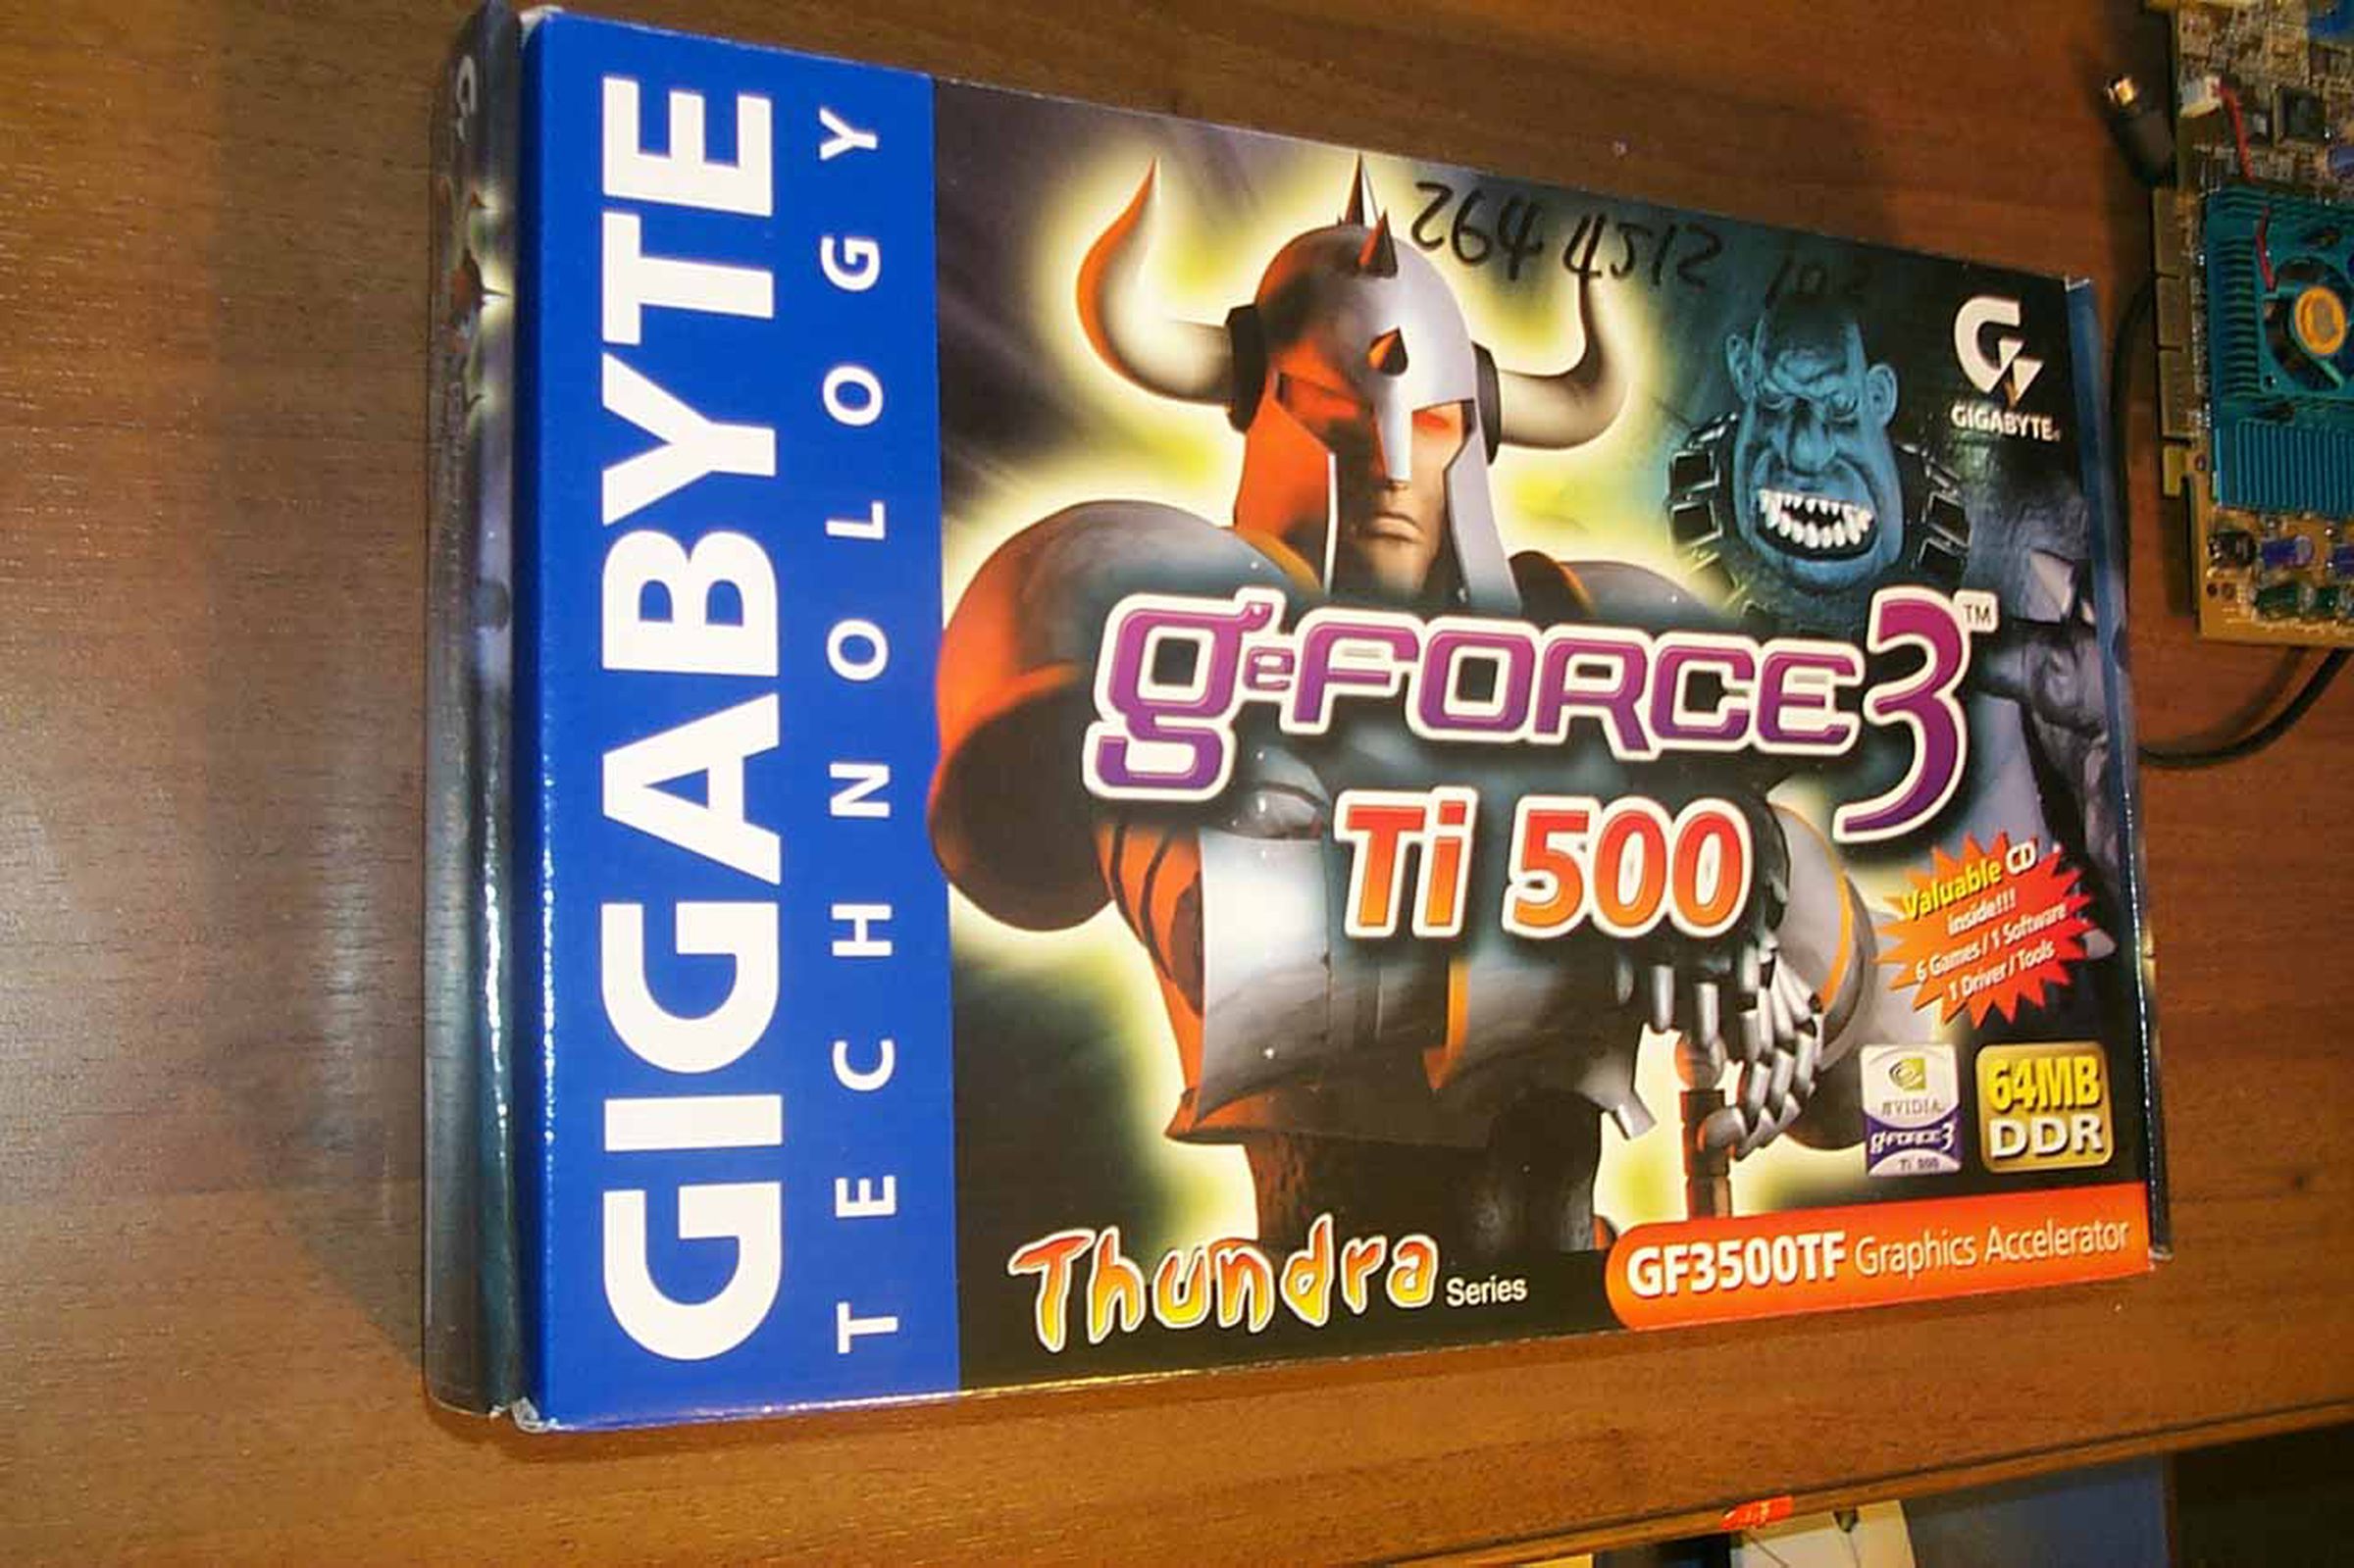 gfx-card-geforce3